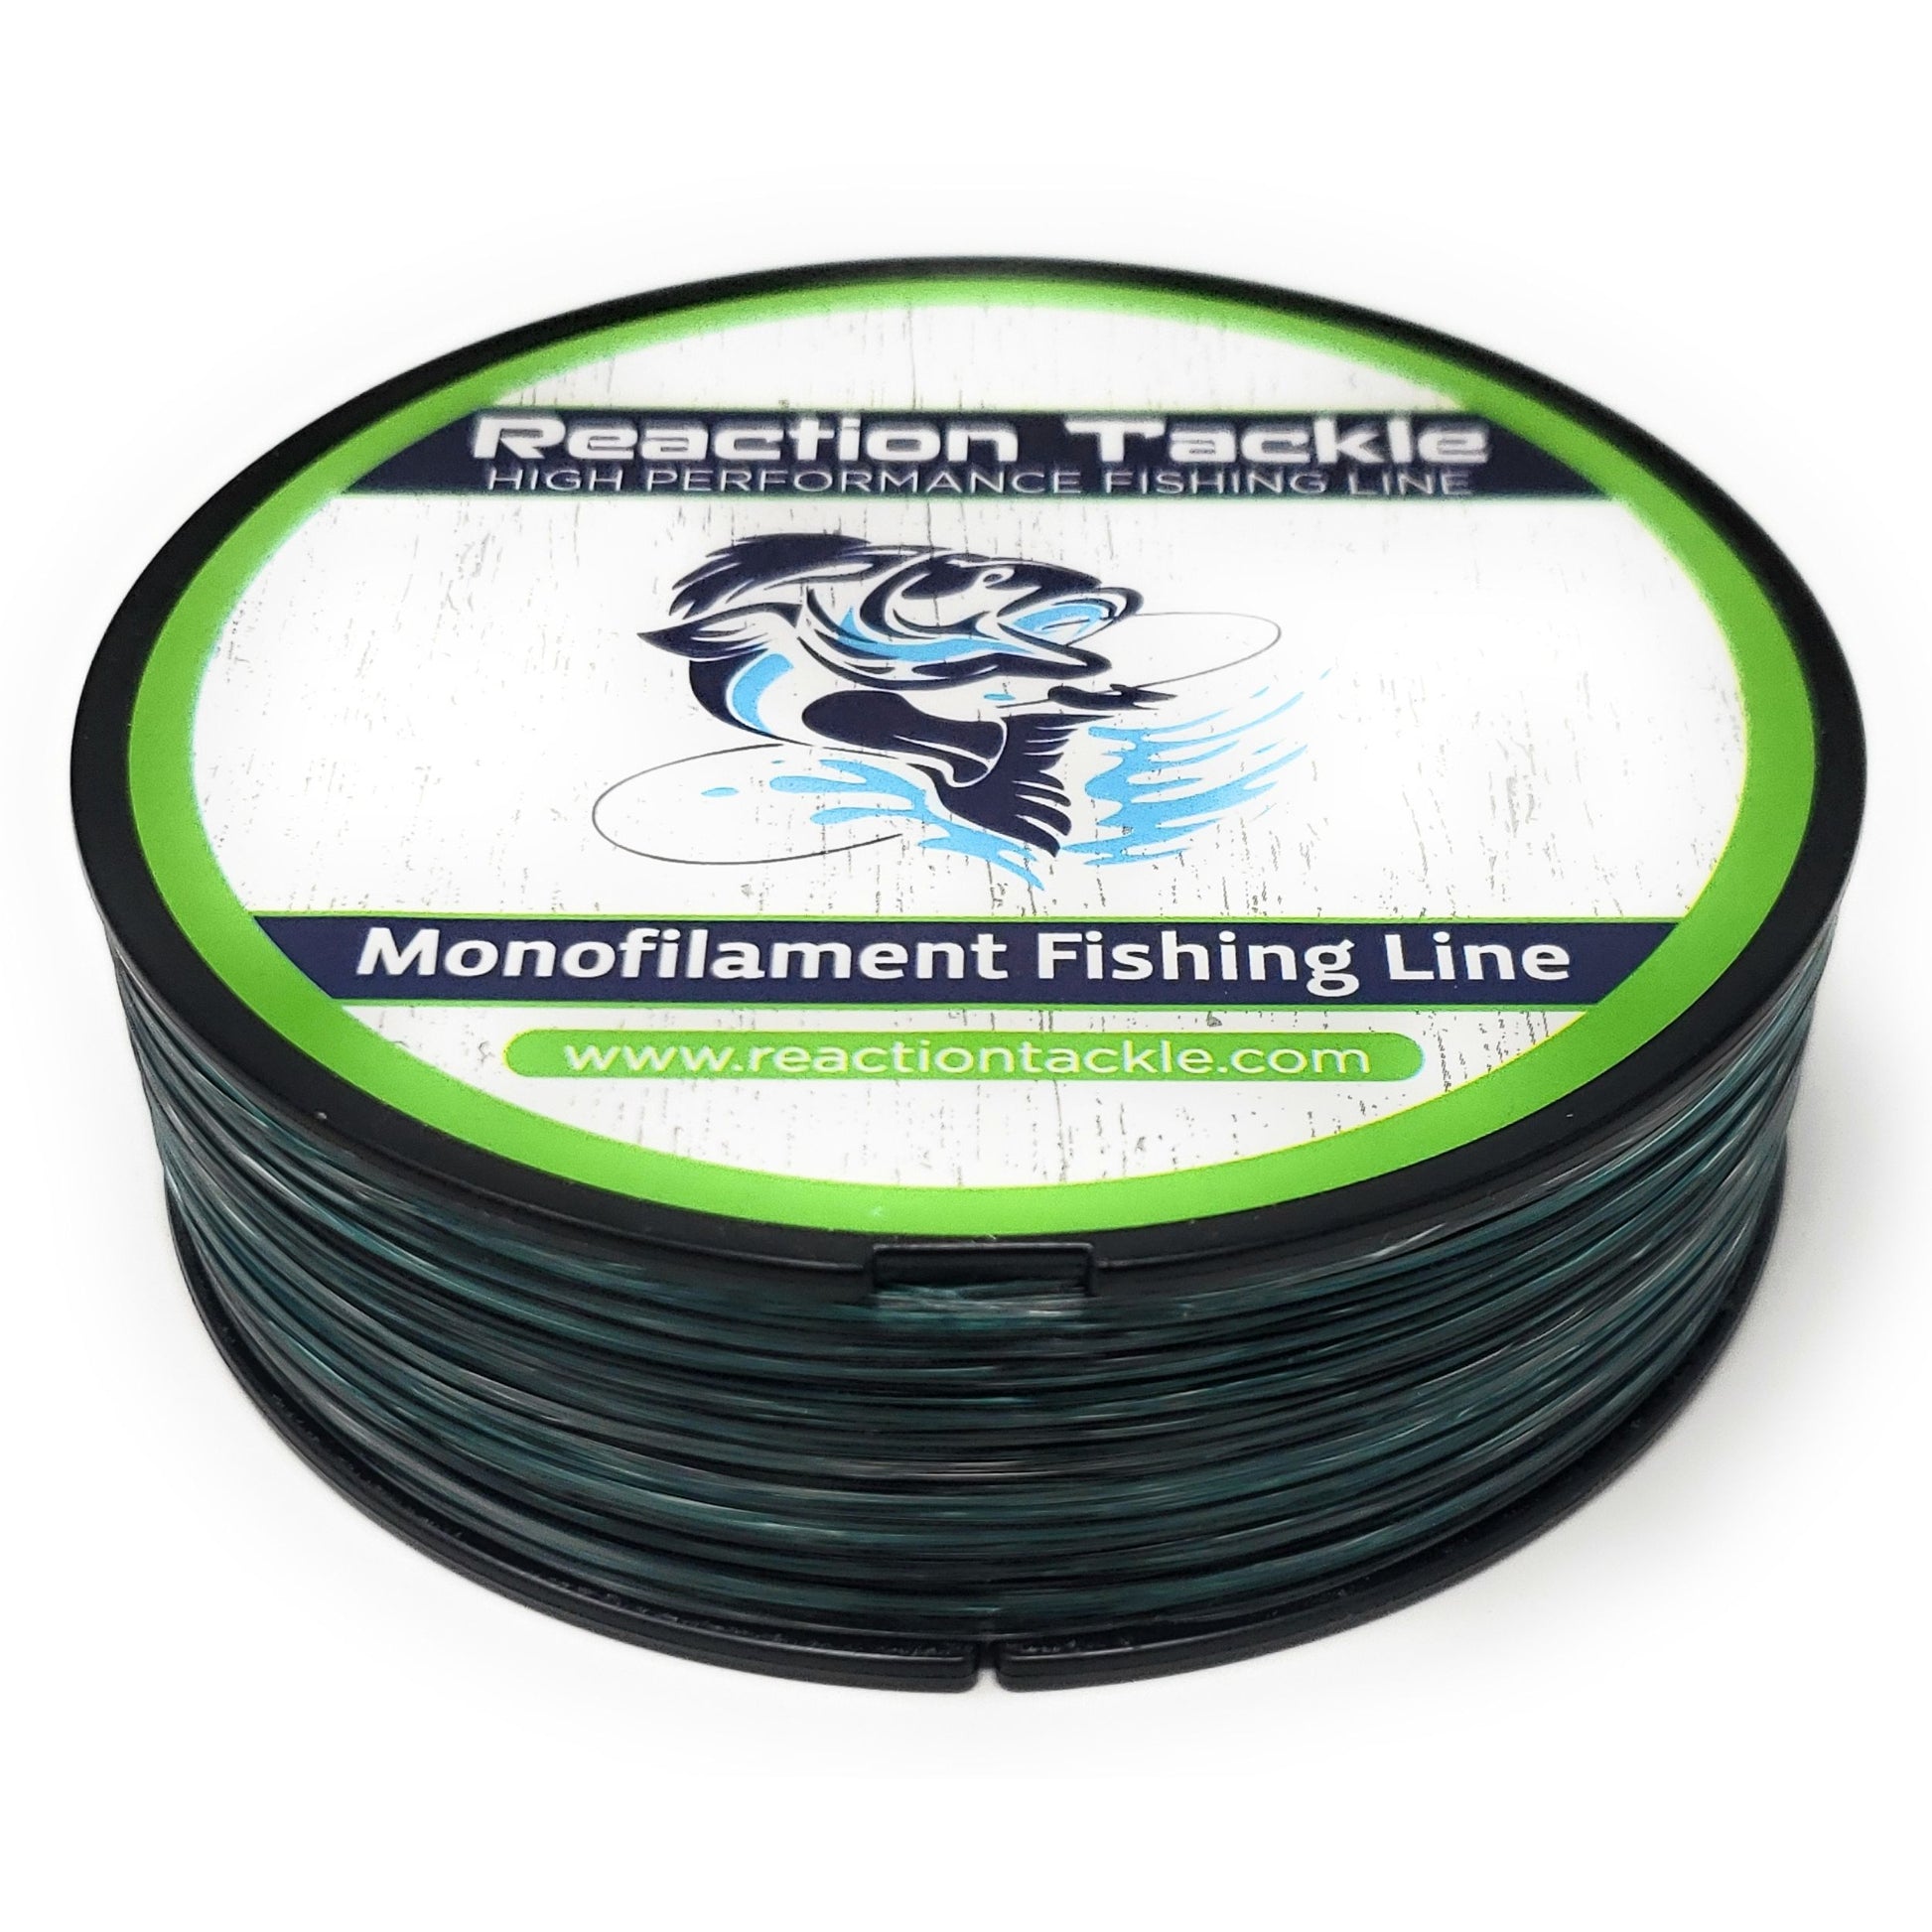 Nylon Fishing Wires Tools, Mono Line Fishing Line